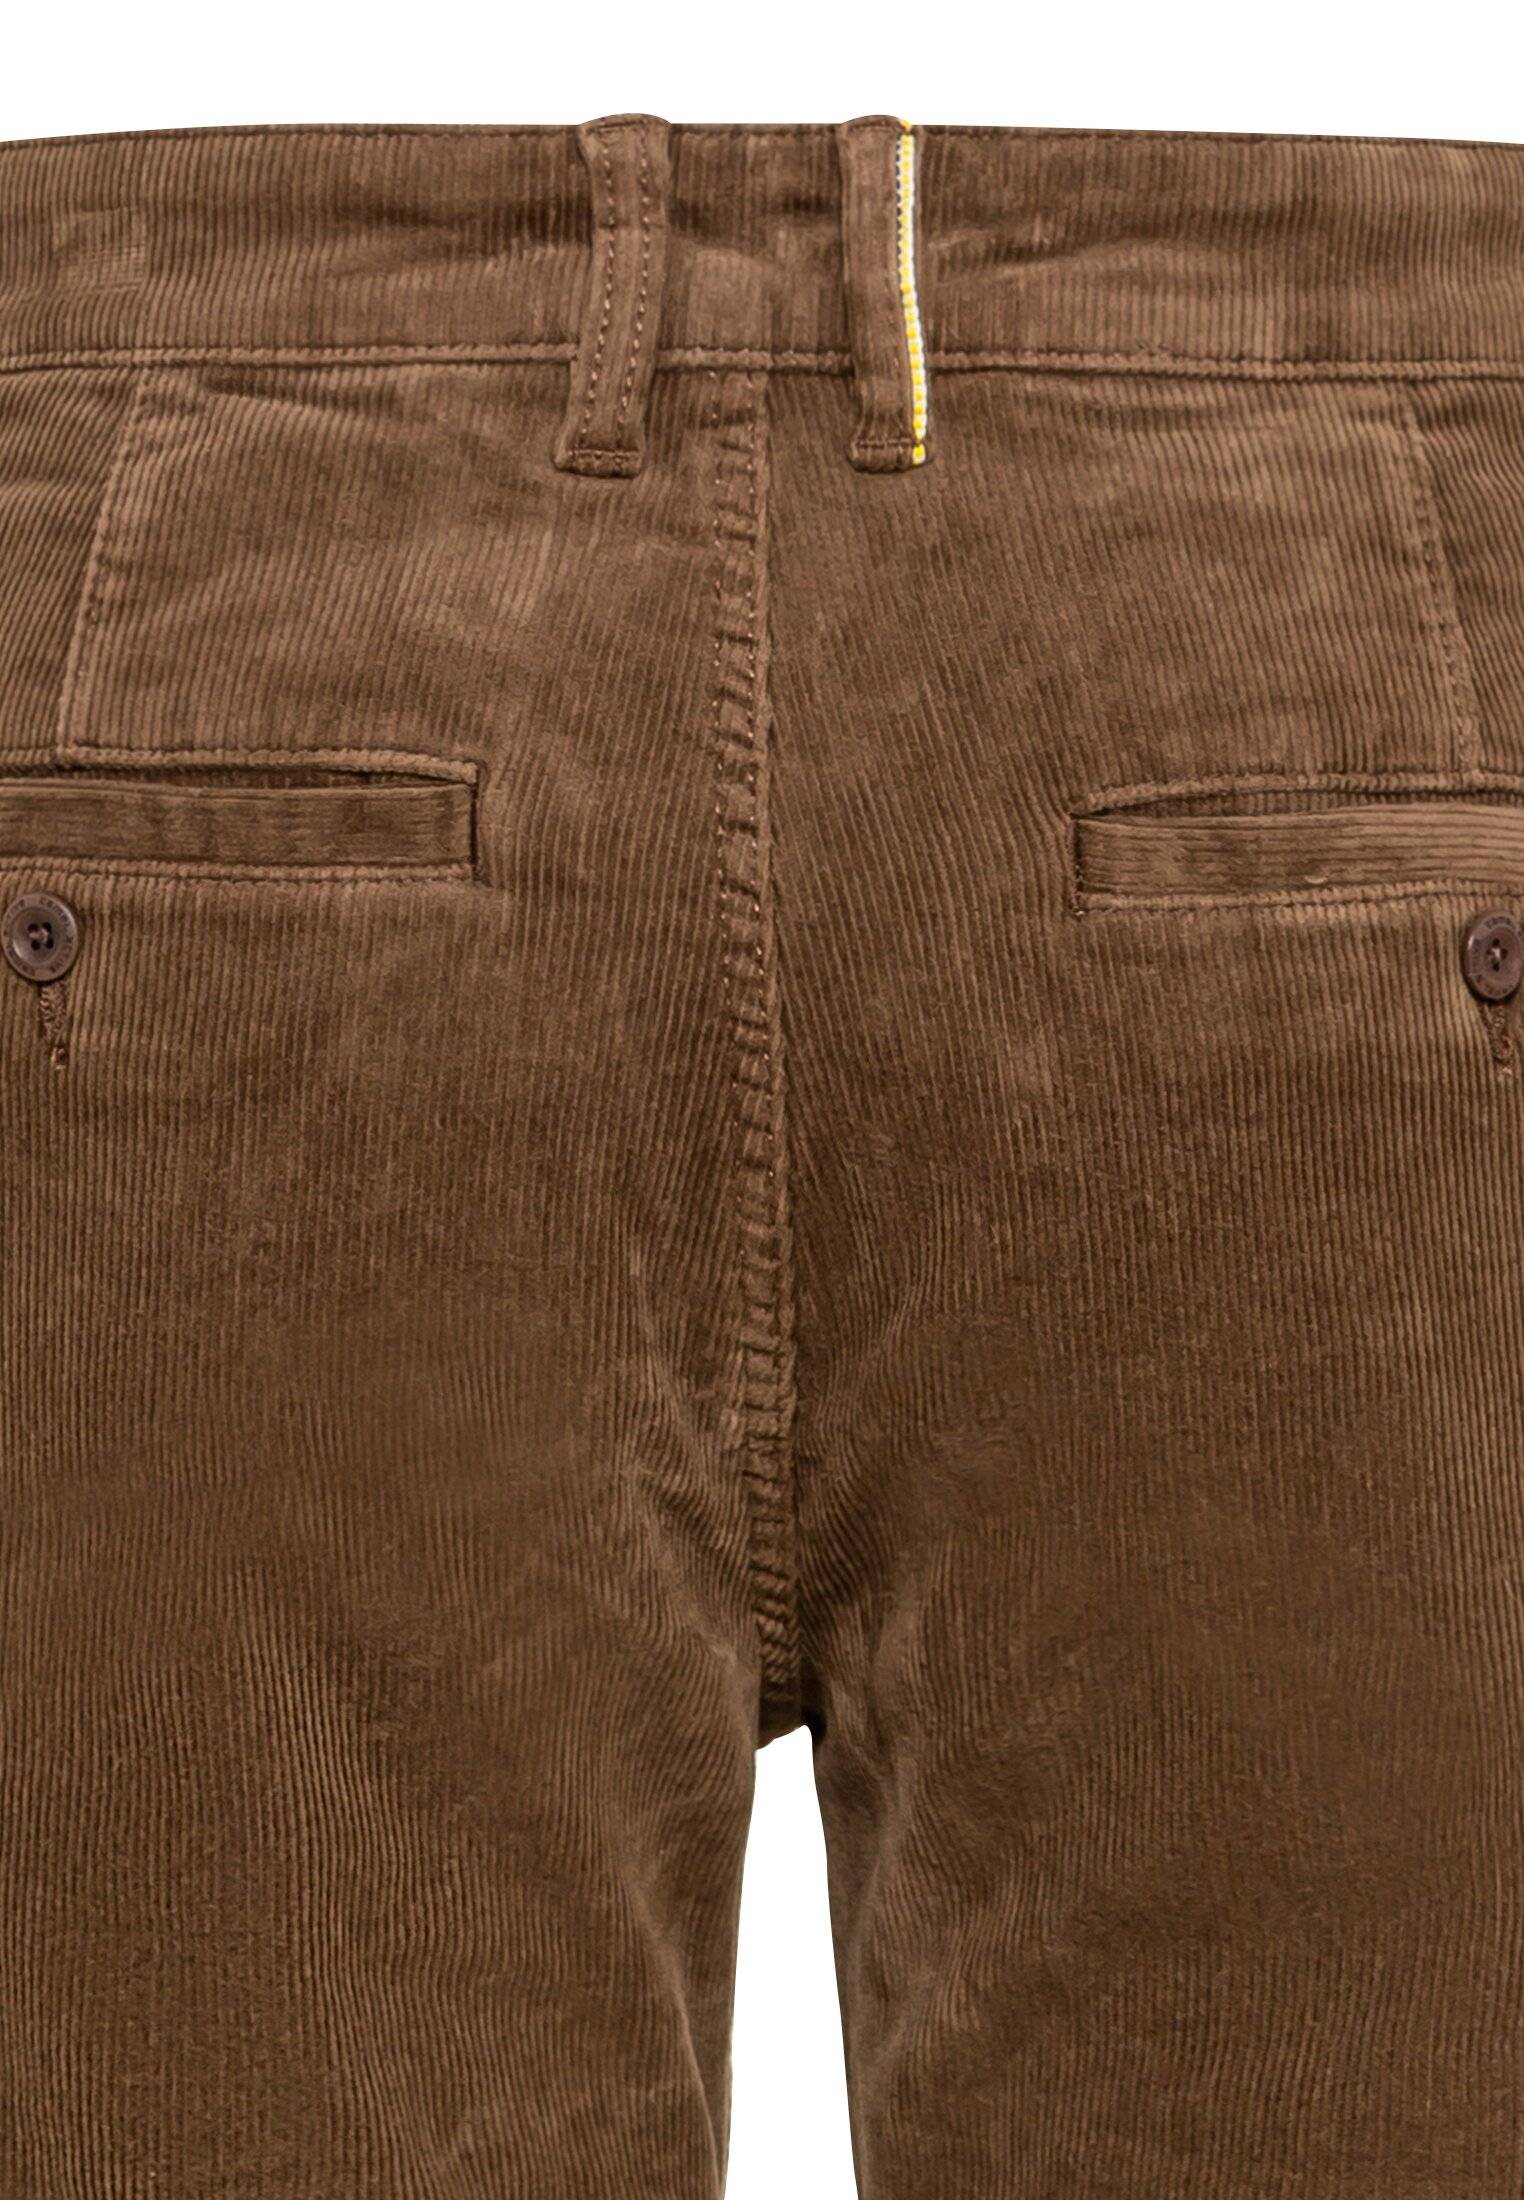 Мужские брюки Camel Active, коричневые, цвет коричневый, размер 36 - фото 4